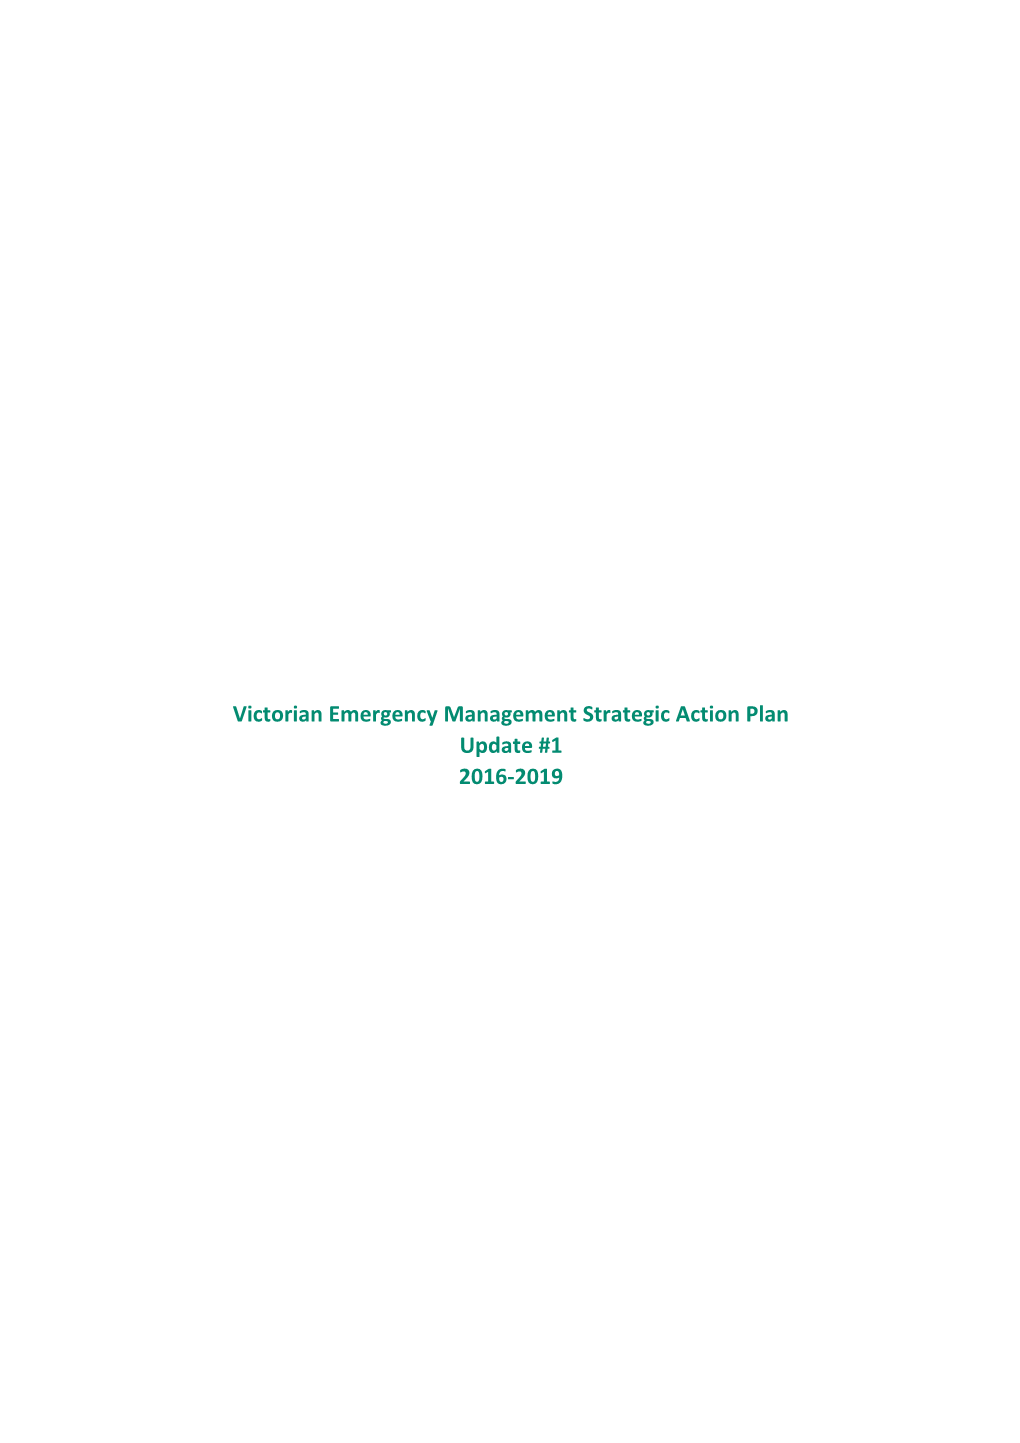 Victorian Emergency Management Strategic Action Plan Update #1 2016-2019